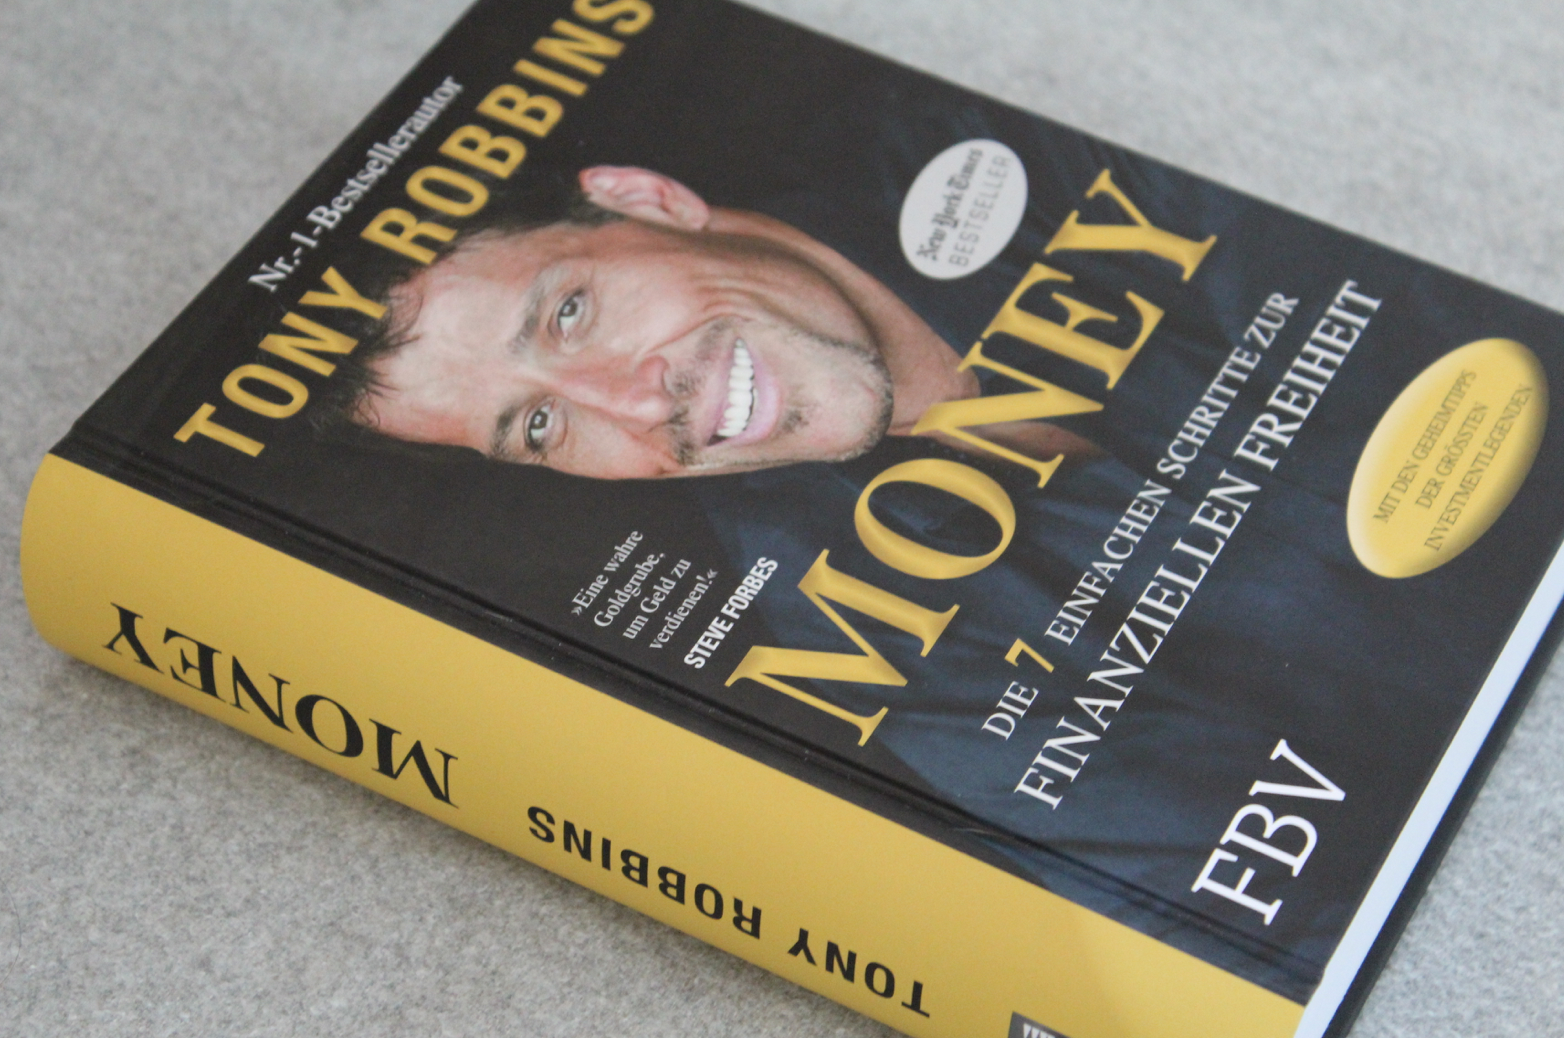 18 Money Buch über Geld Tony Robbins